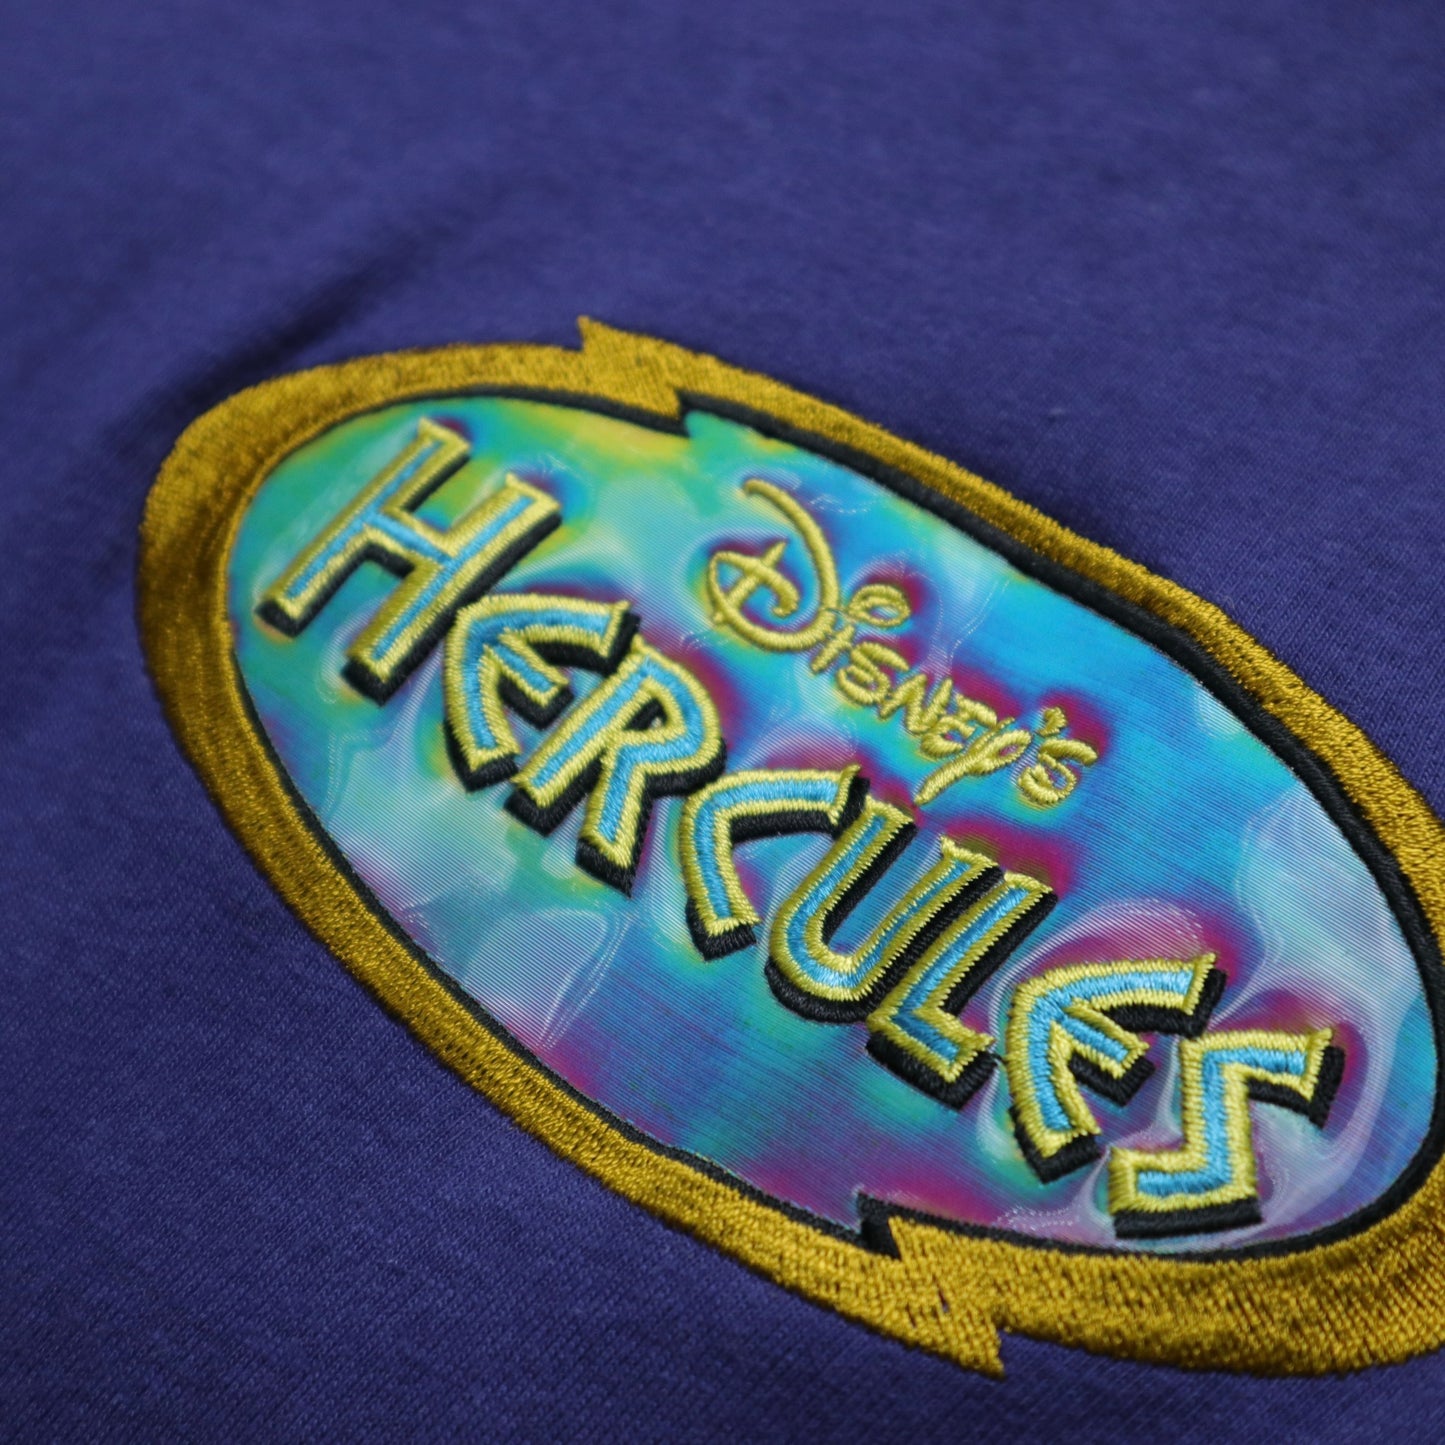 90年代 アメリカ製 ディズニー ヘラクレス Tシャツ